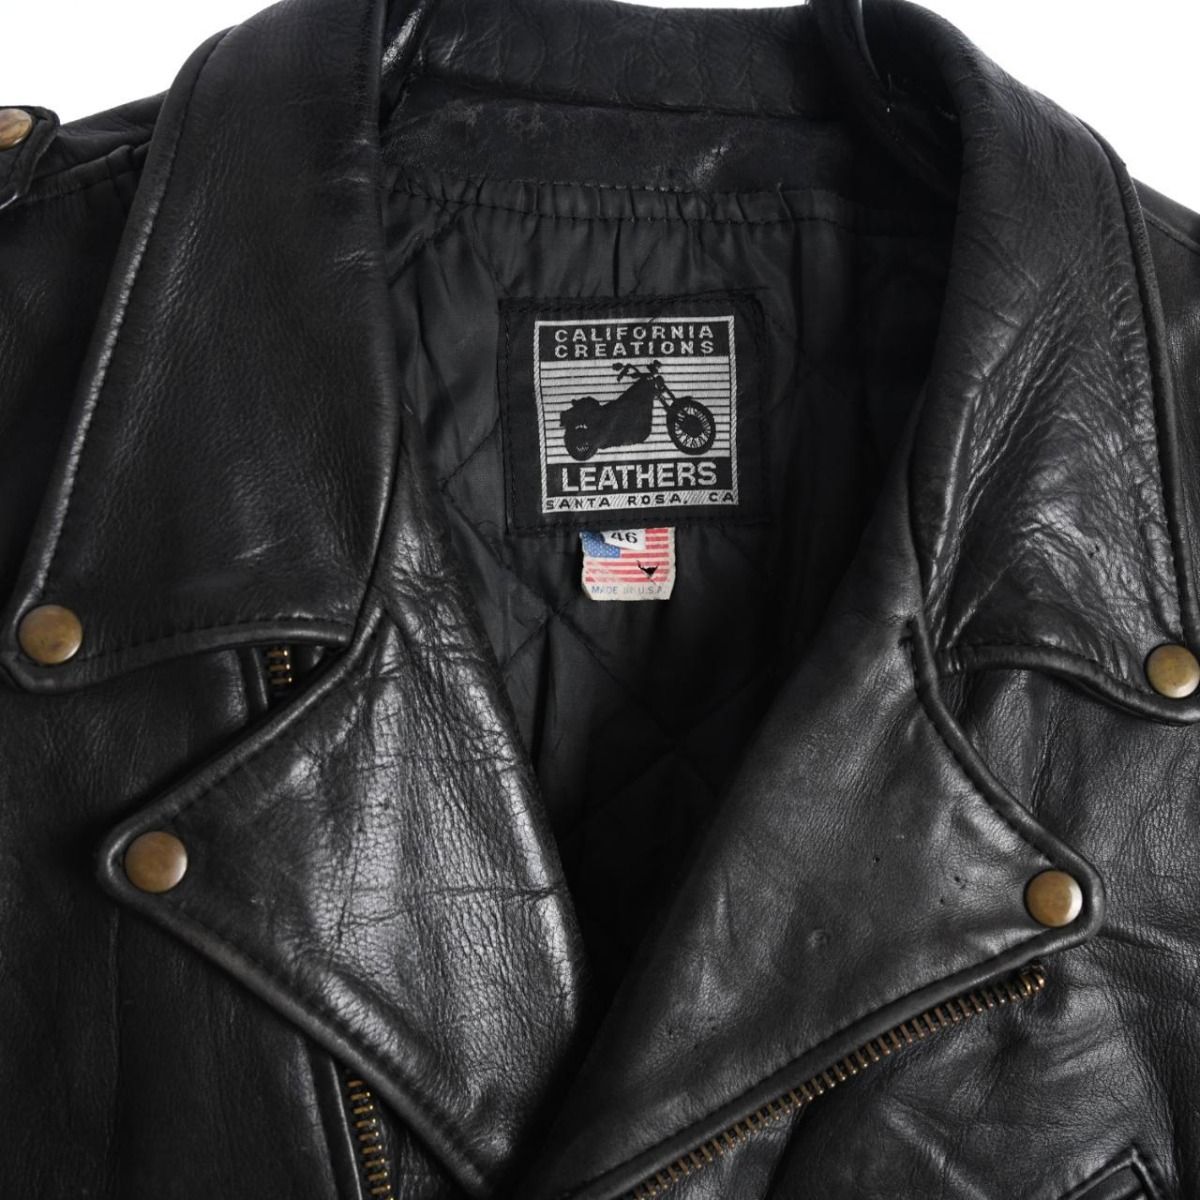 Harley Davidson 1990s Leather Biker Jacket